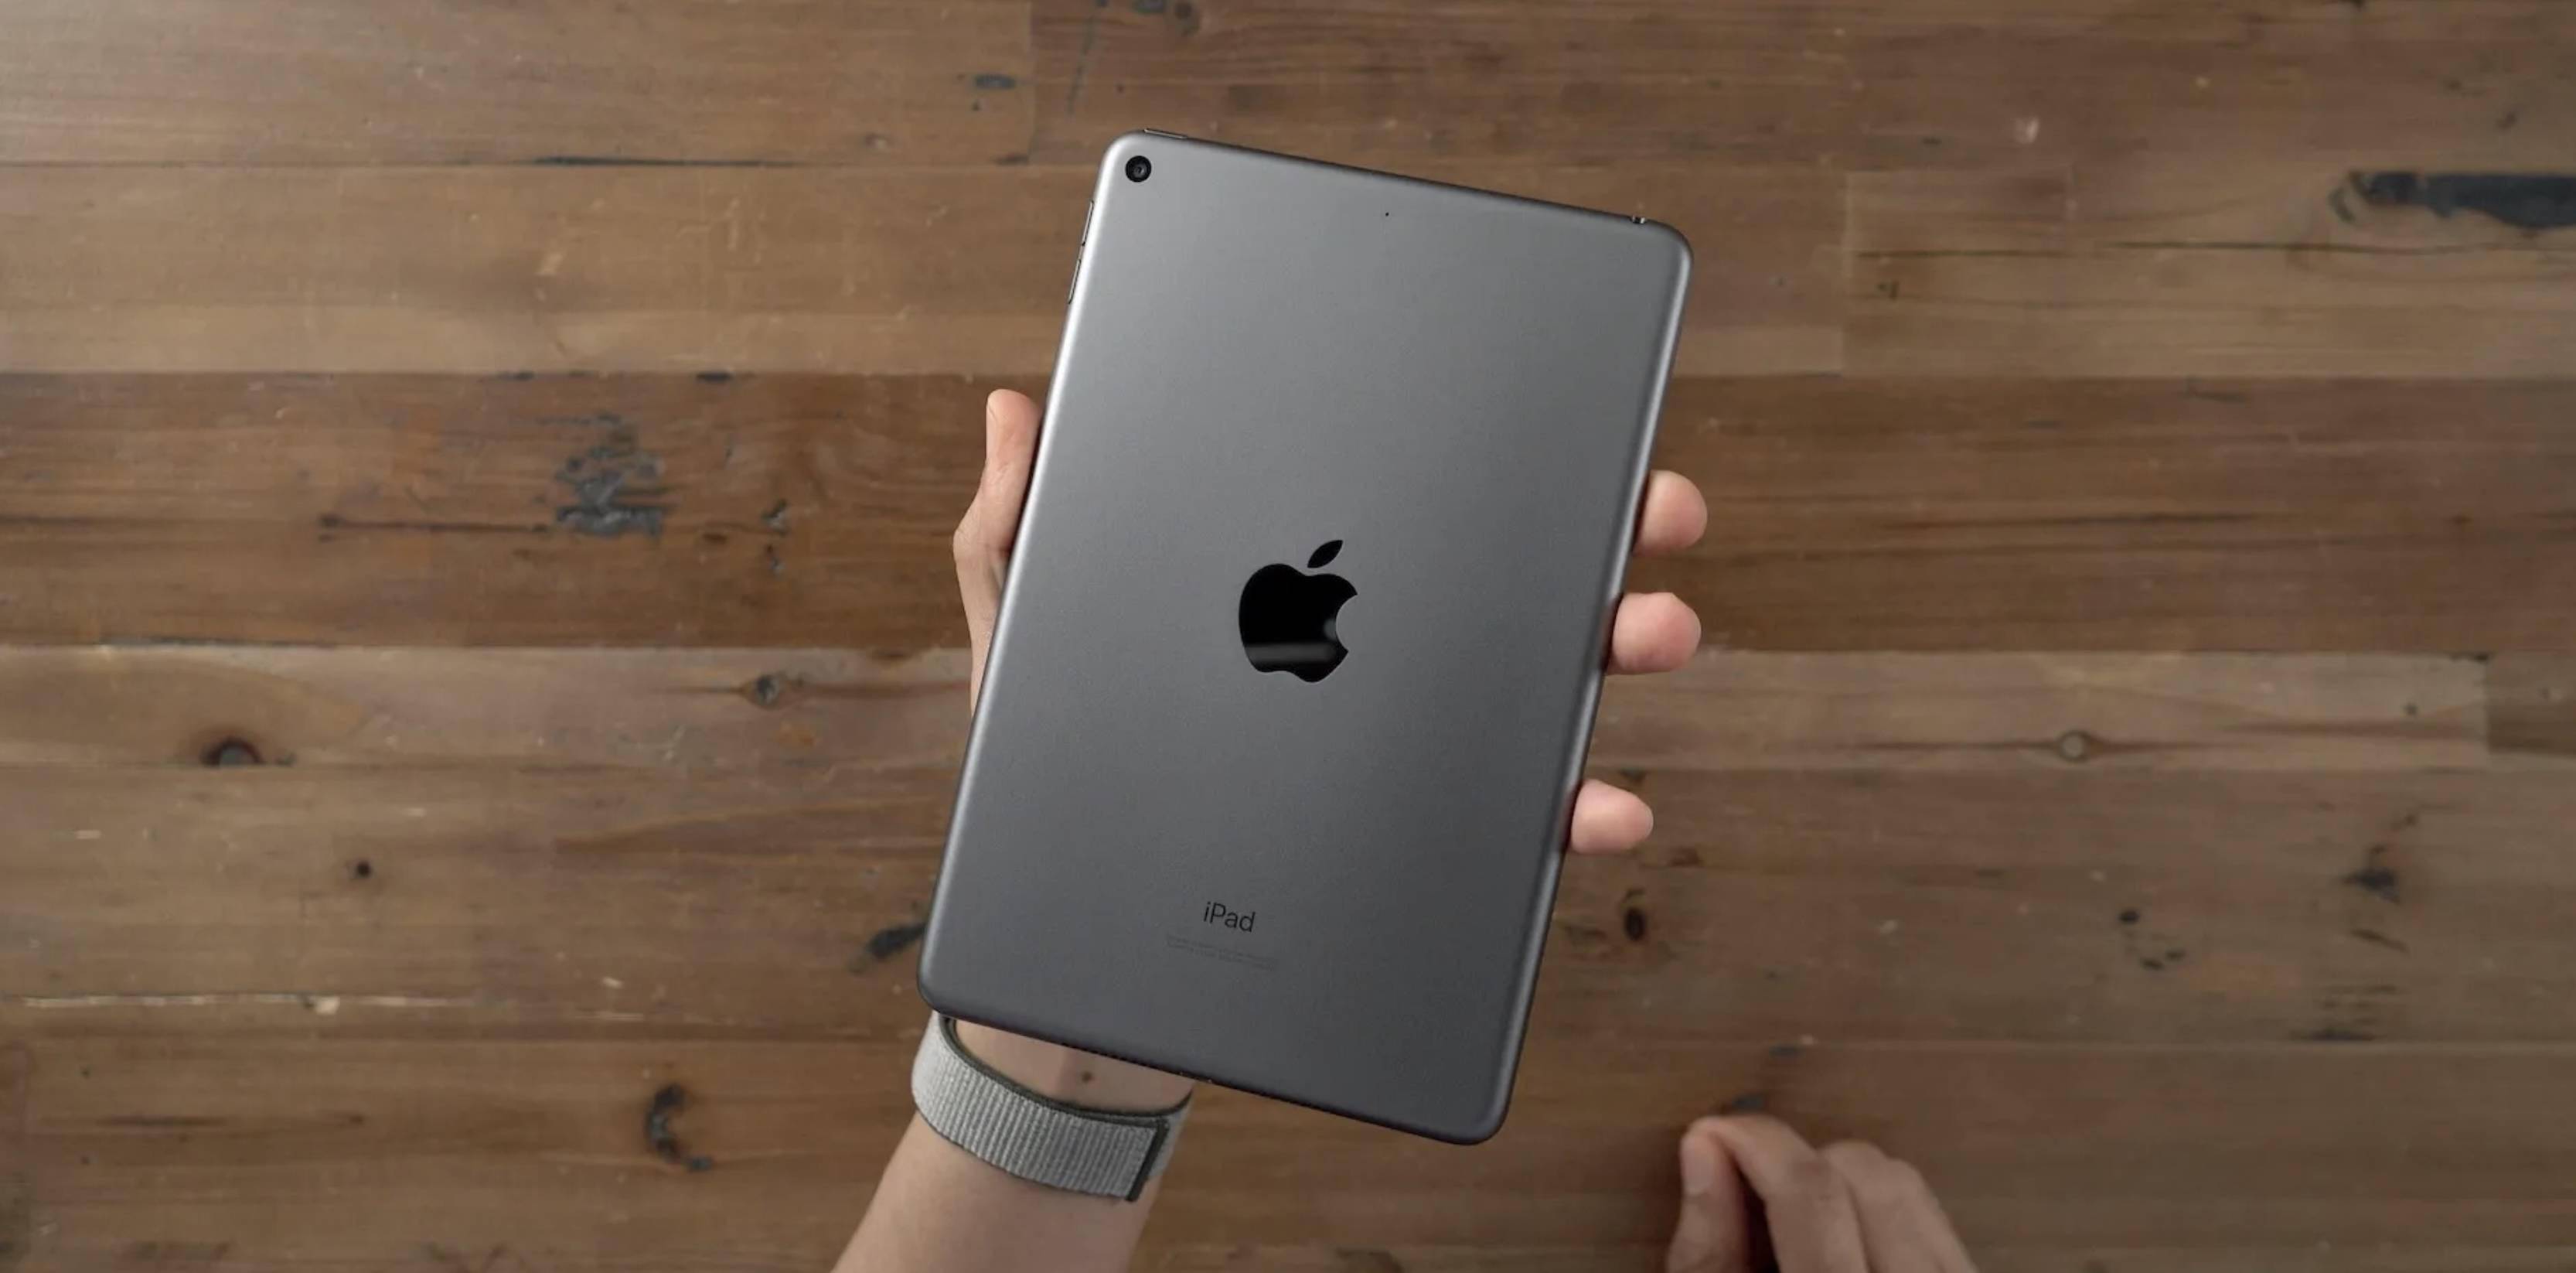 爆料称苹果正在开发搭载a15芯片的新款ipad mini